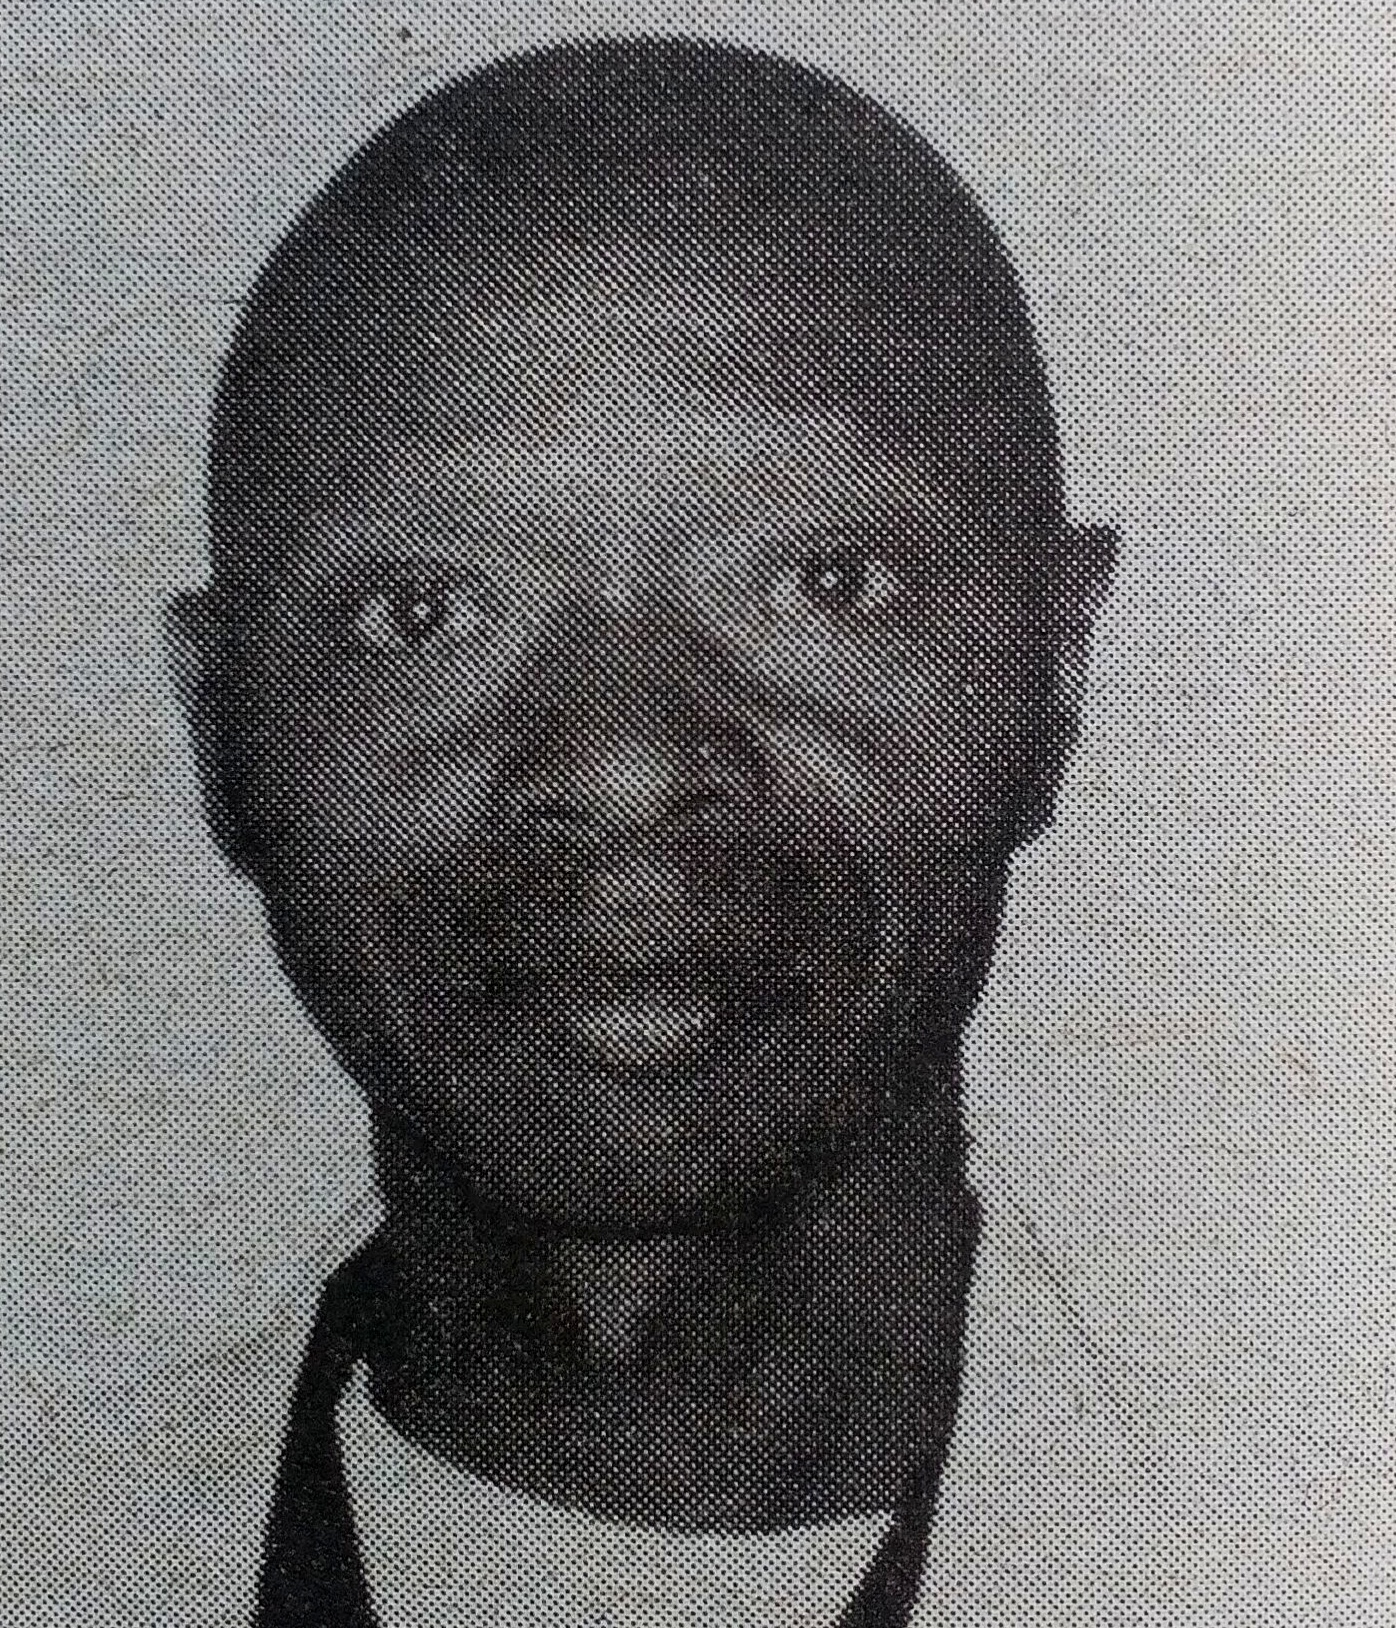 Obituary Image of Joseph Ochieng Paul